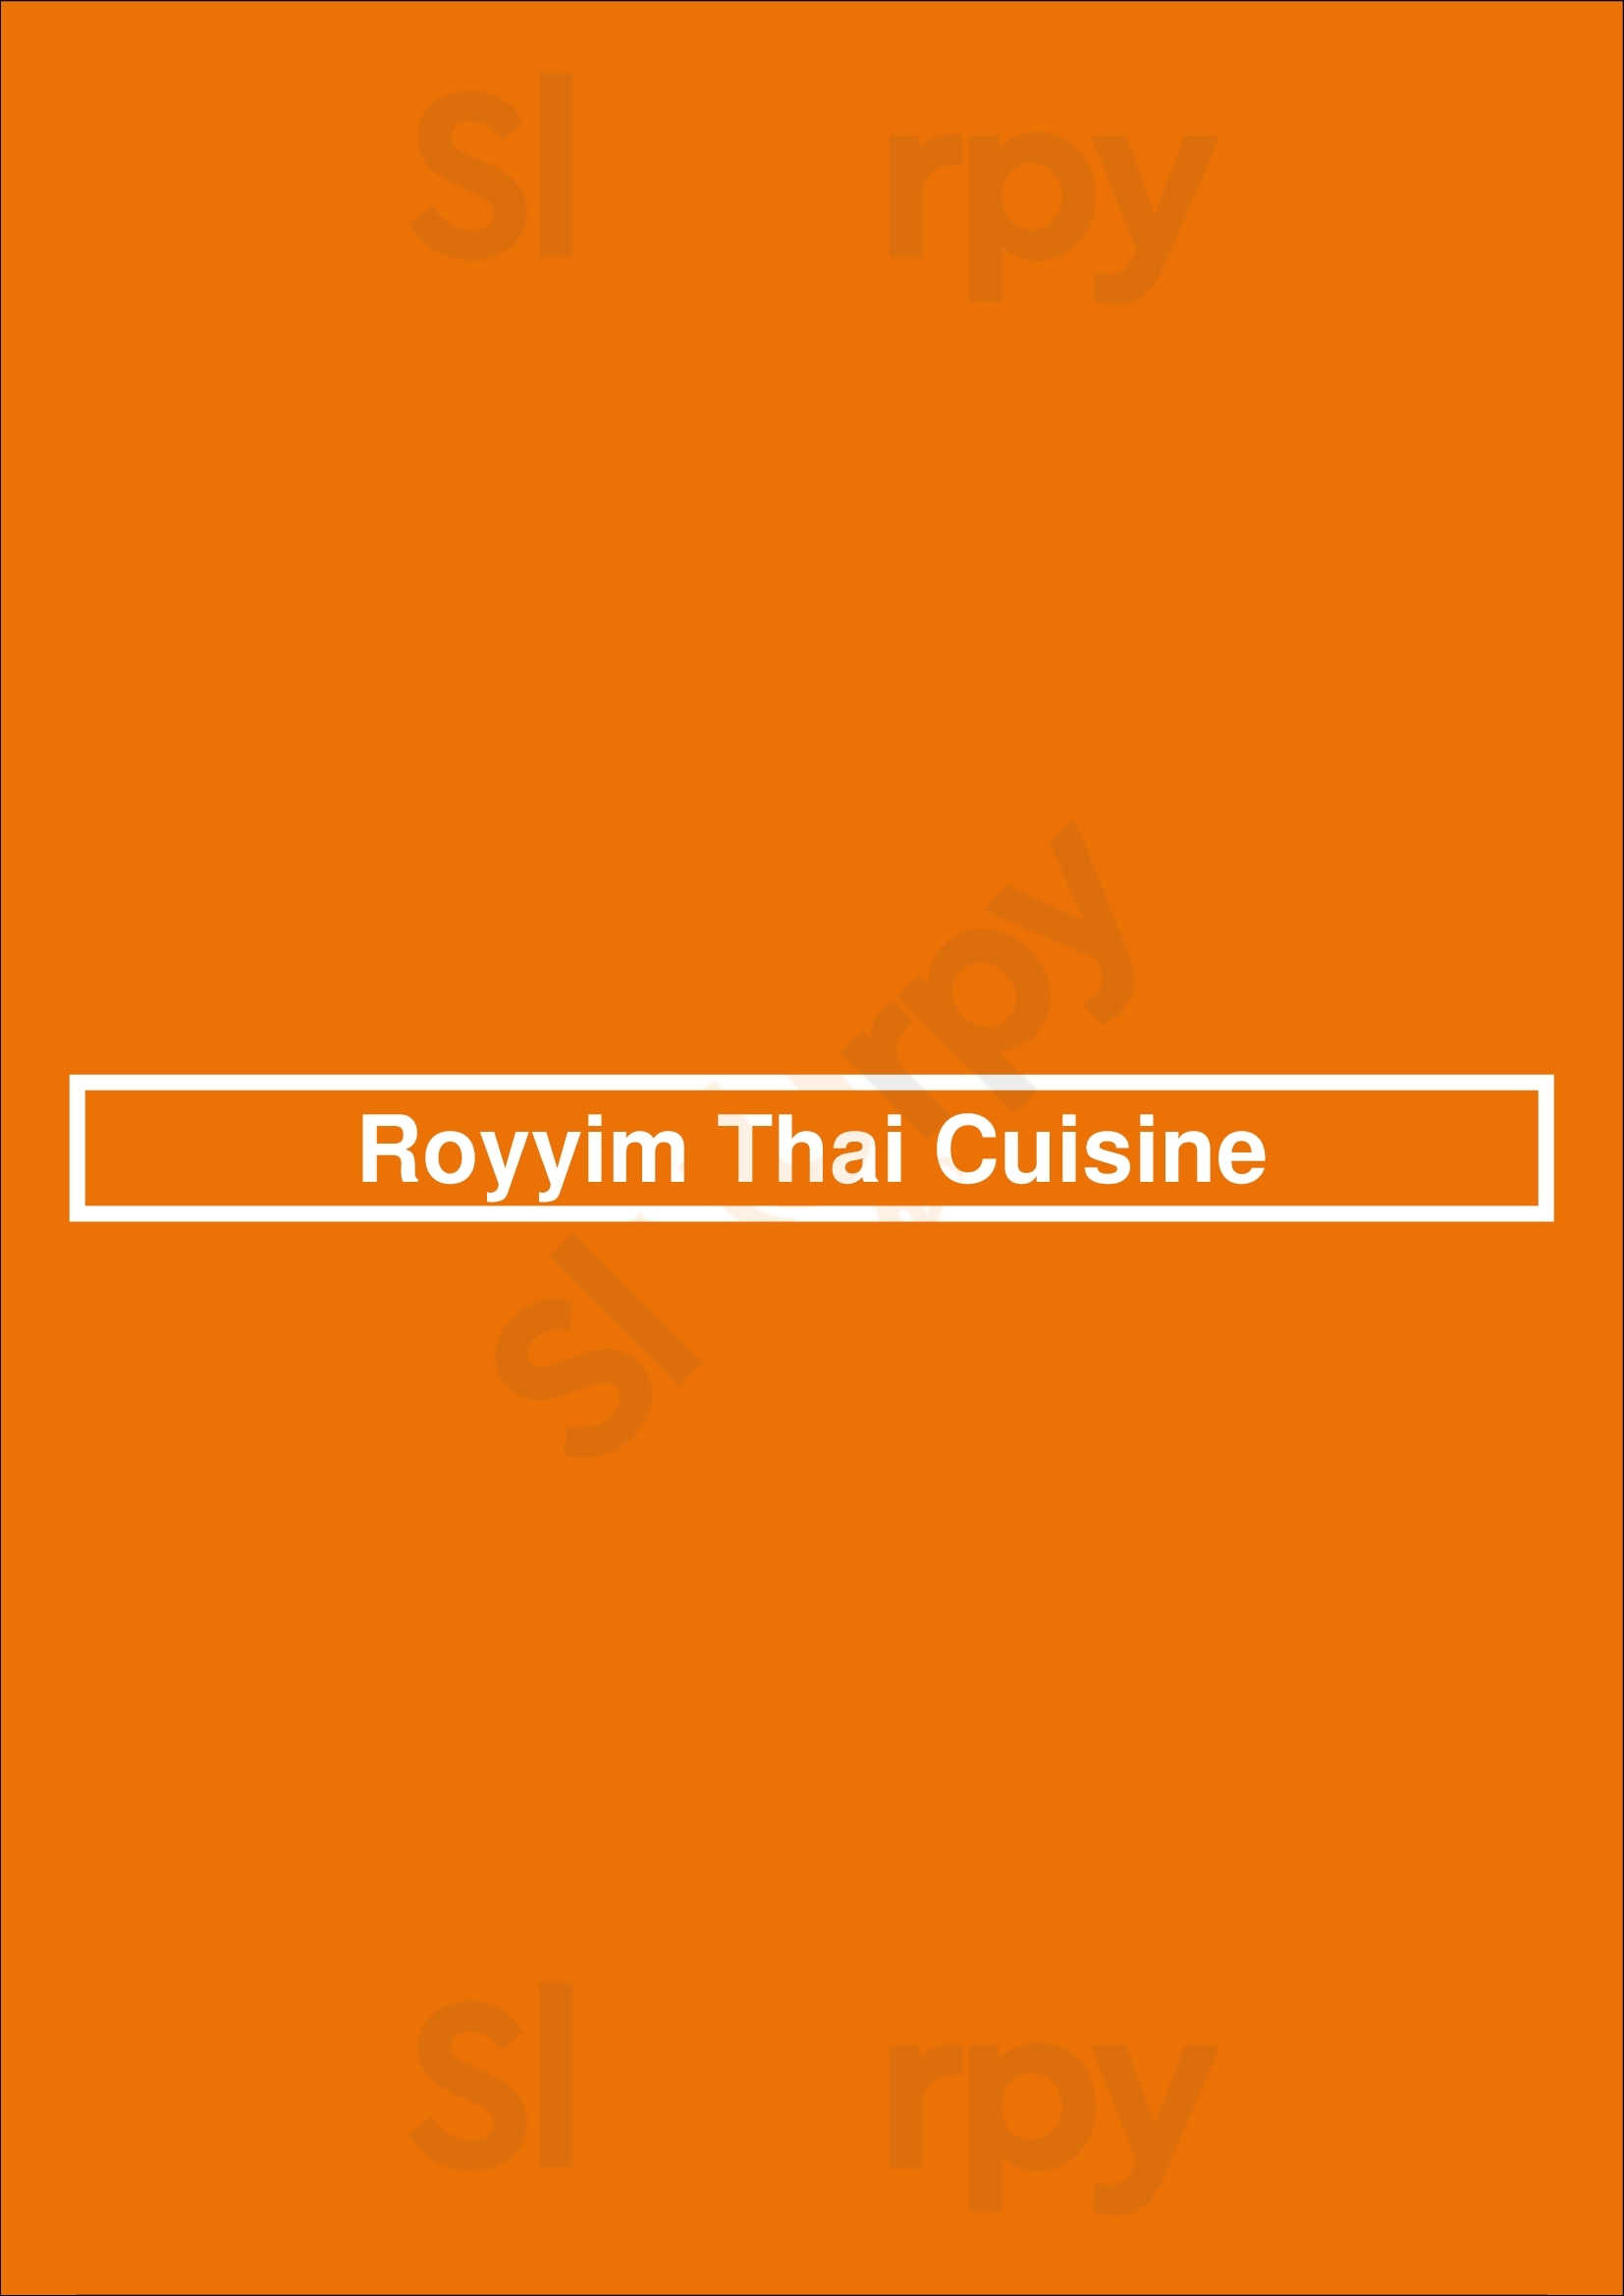 Royyim Thai Cuisine Mesa Menu - 1